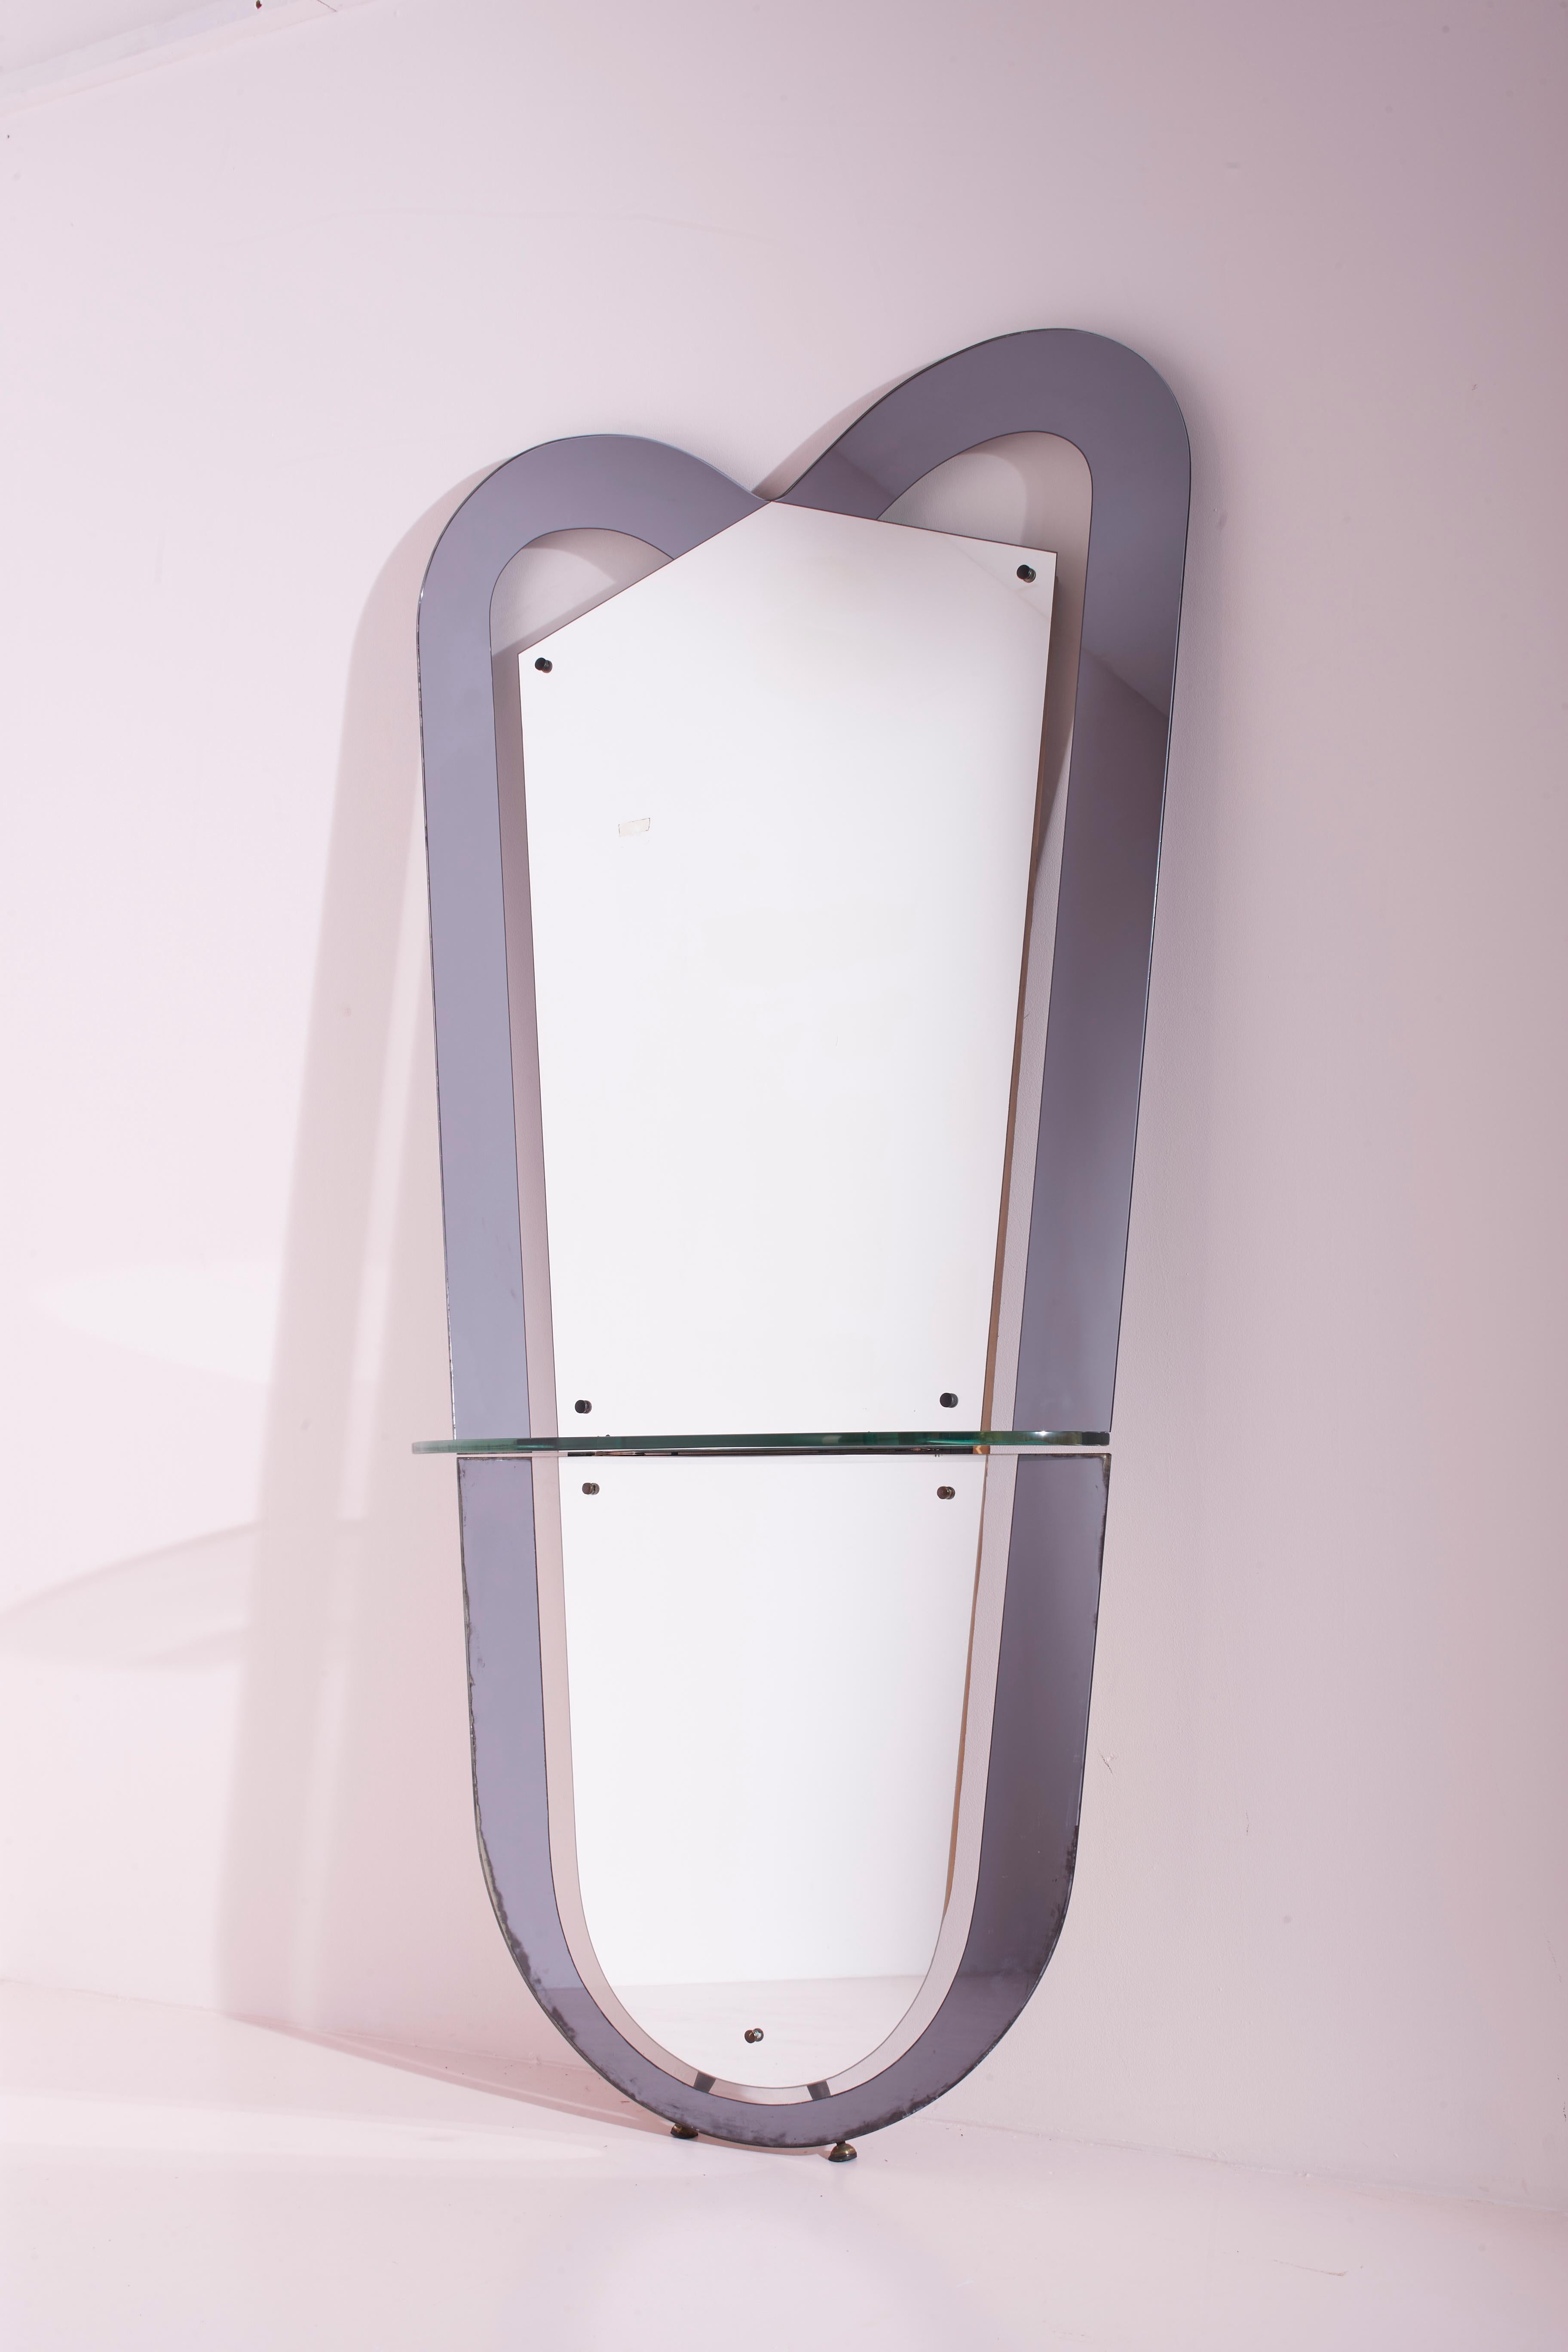 Grande console en miroir et verre coloré avec étagère en cristal, marque Santambrogio & De Berti, fabrication italienne des années 1965.

Le miroir de sol prend la forme d'un grand bouclier, composé d'un miroir entouré d'un cadre en verre miroir